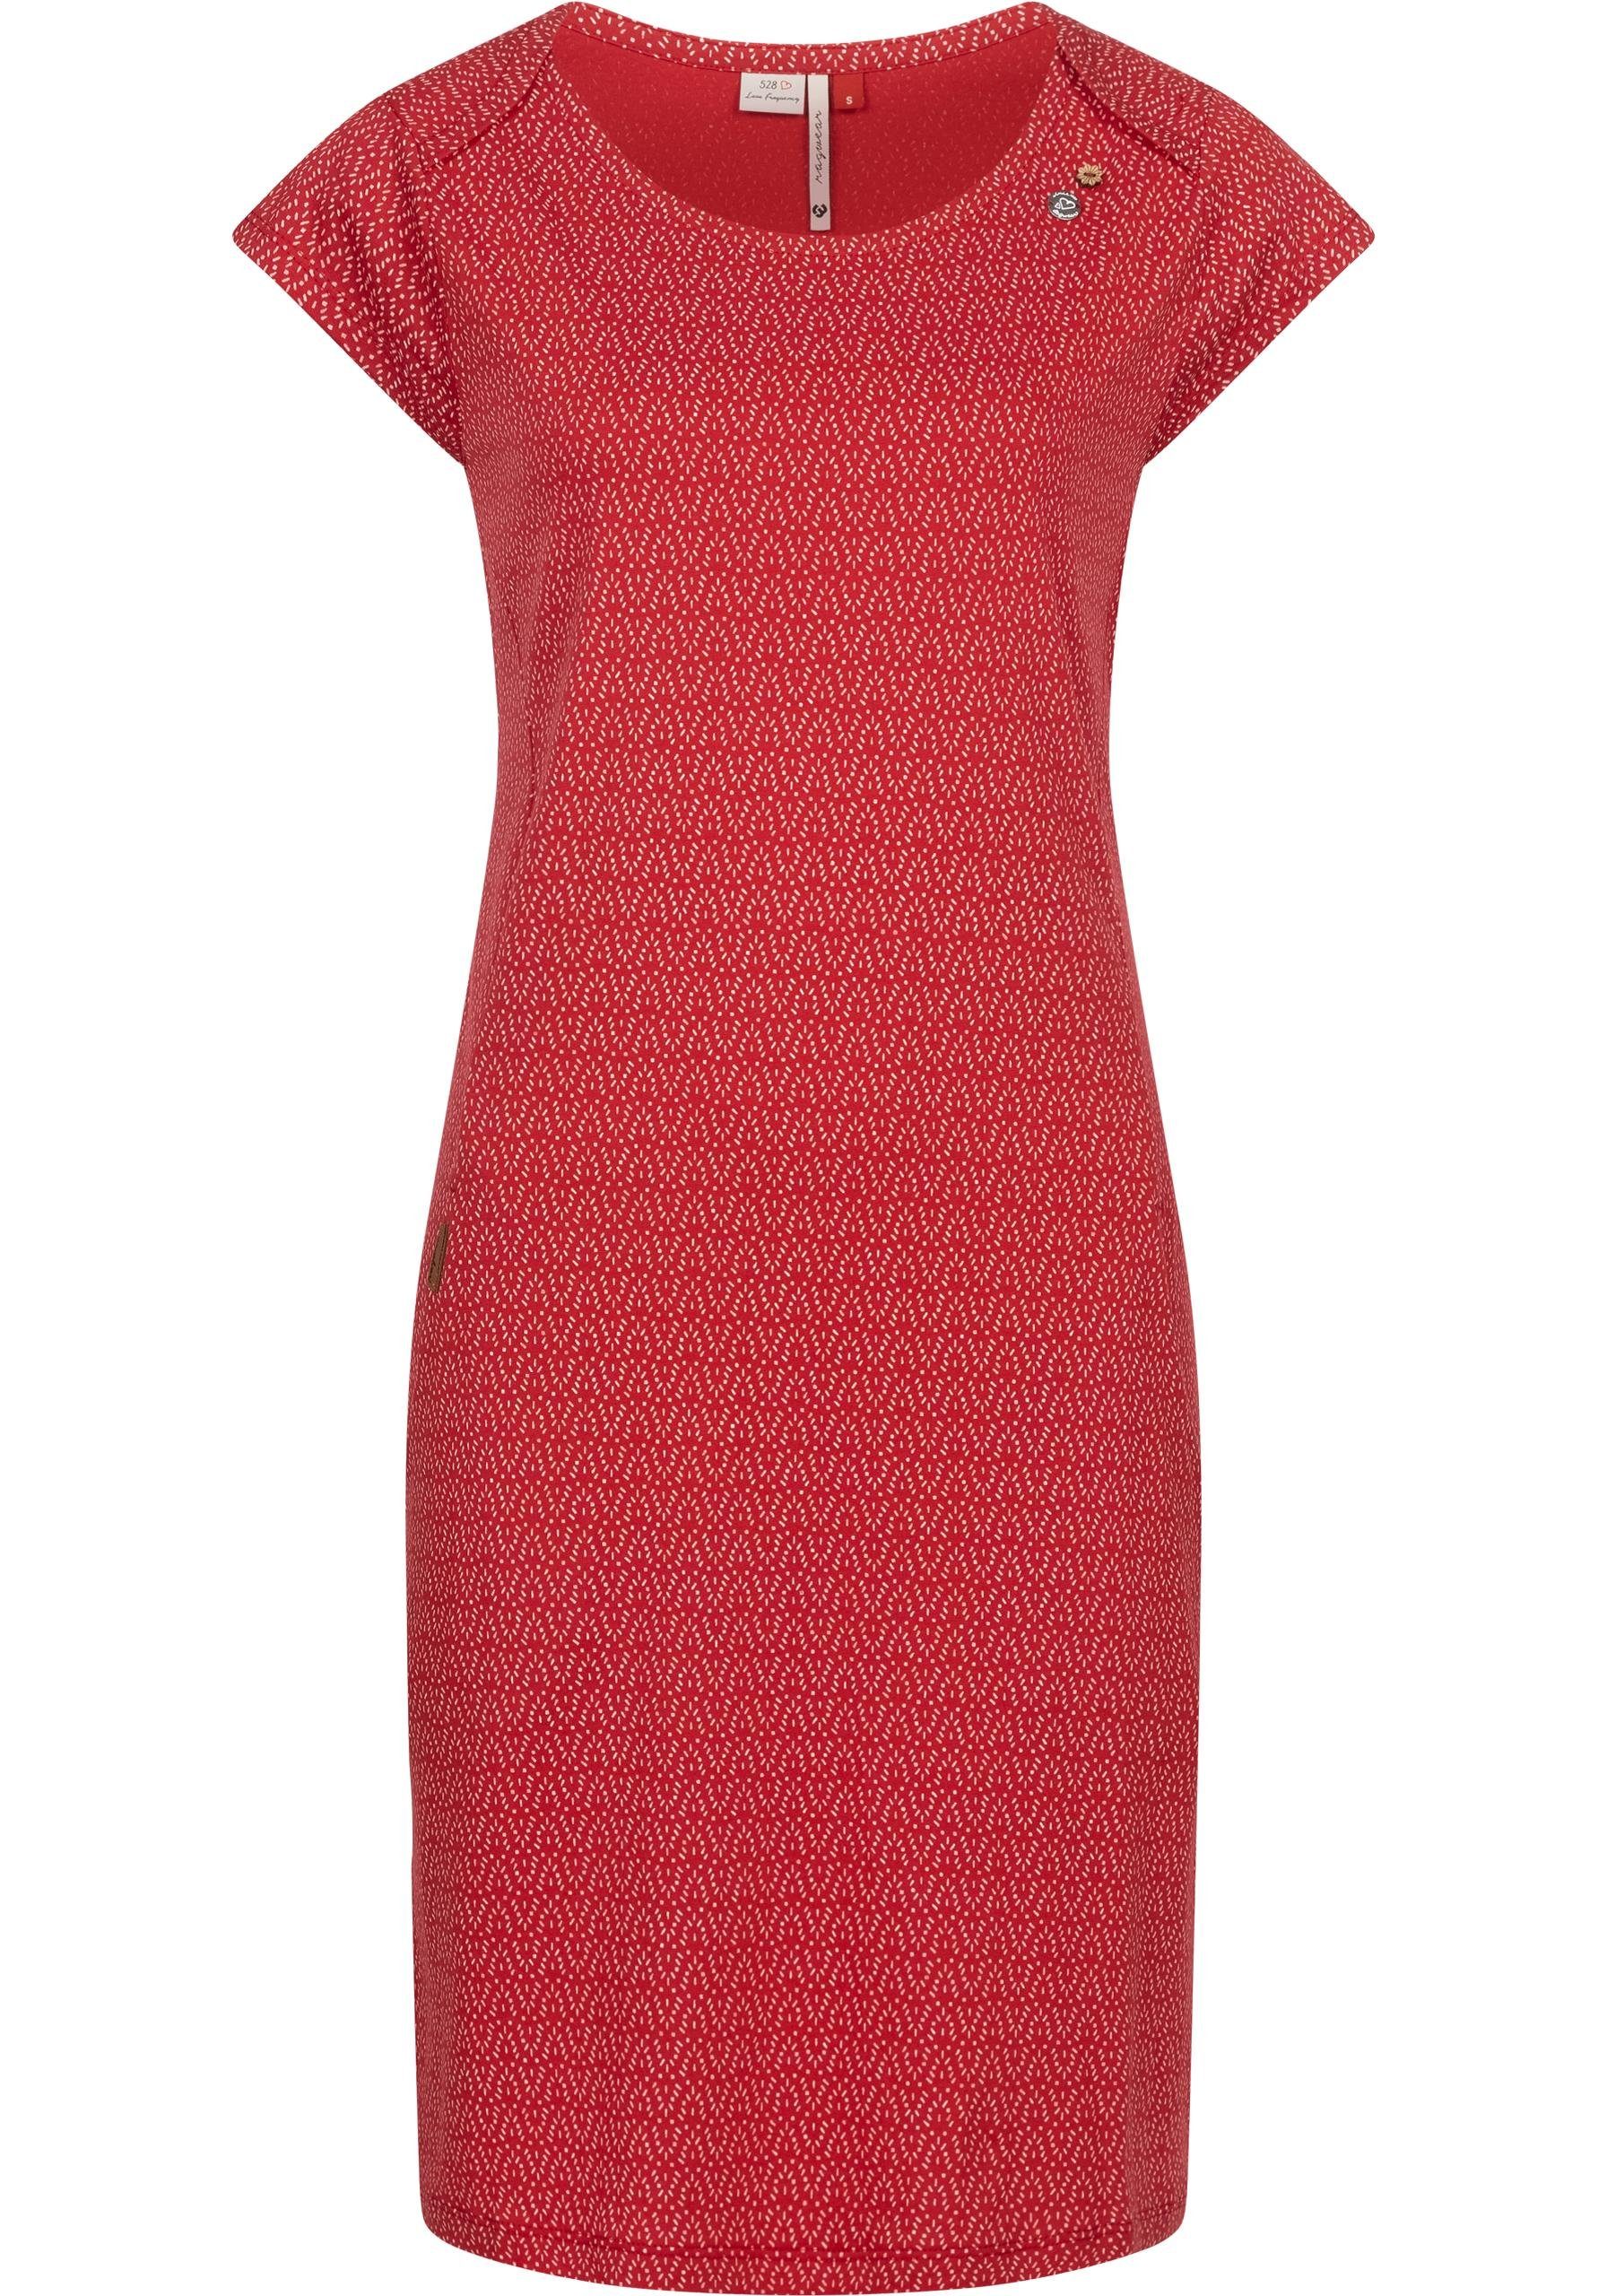 Ragwear Shirtkleid Rivan Print stylisches Sommerkleid mit Alloverprint,  Shirtkleid mit rundem Ausschnitt und seitlichen Taschen